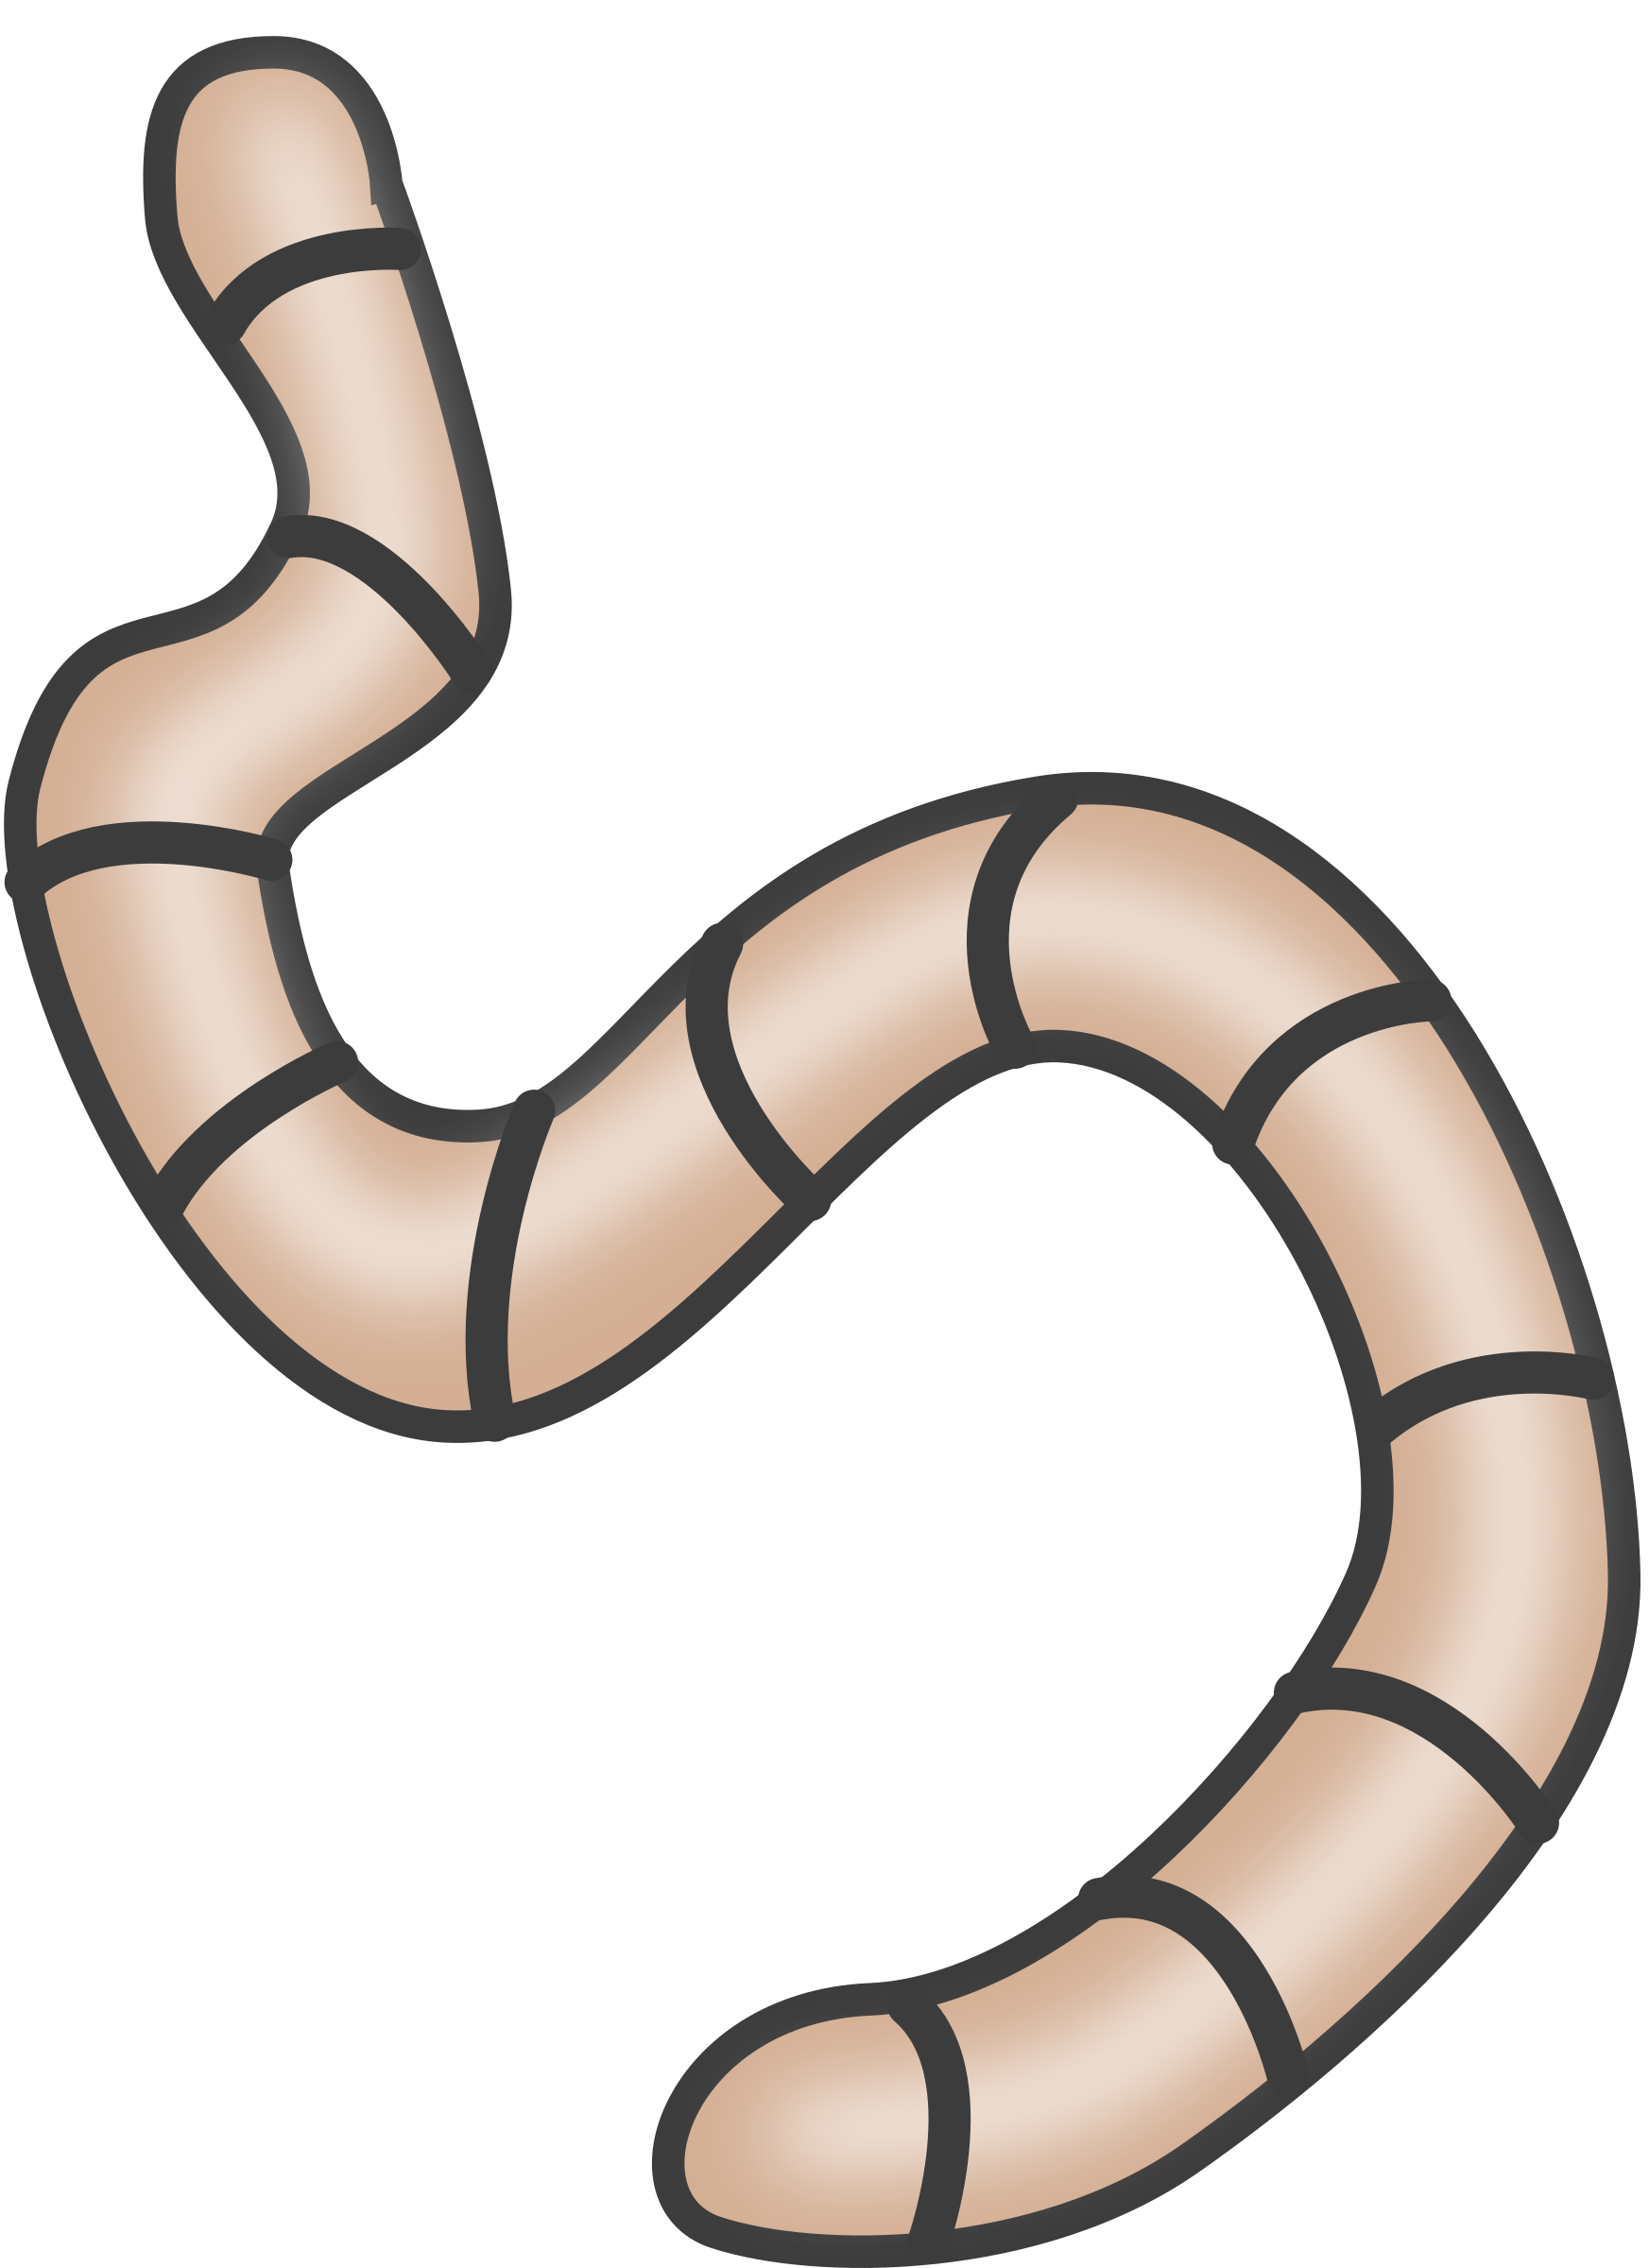 Earthworm Free Content Clip Art - Earthworm Free Content Clip Art (1745x2400)